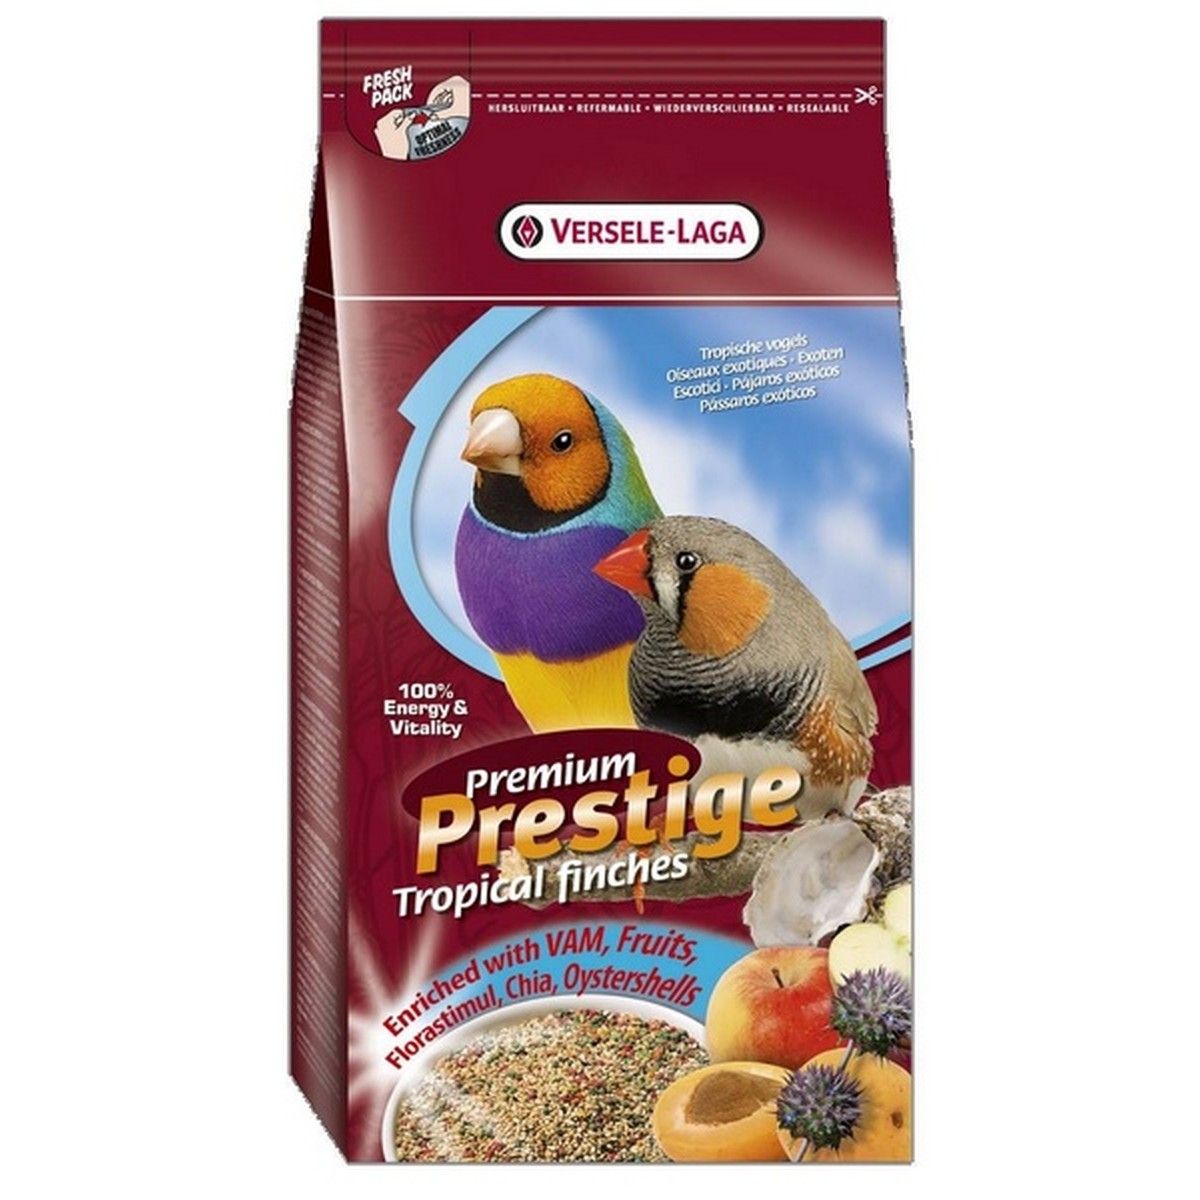   Oiseaux Exotiques Prestige Premium. 1 kg  1kg